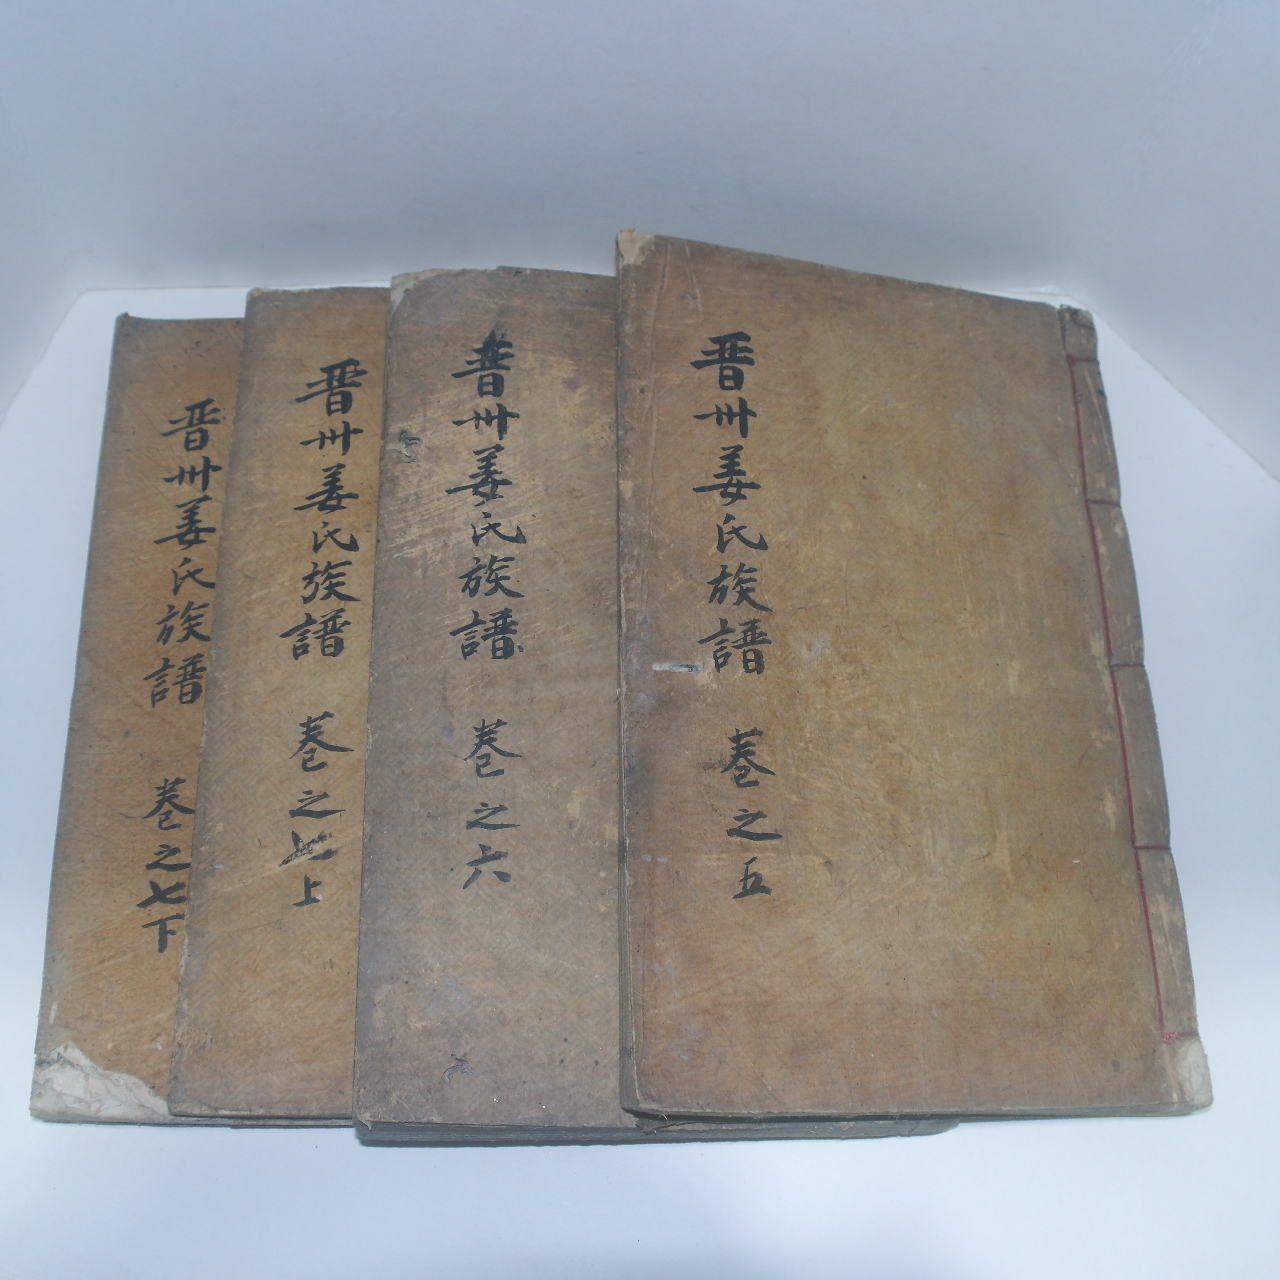 목활자본 진주강씨족보(晉山姜氏族譜) 8책완질